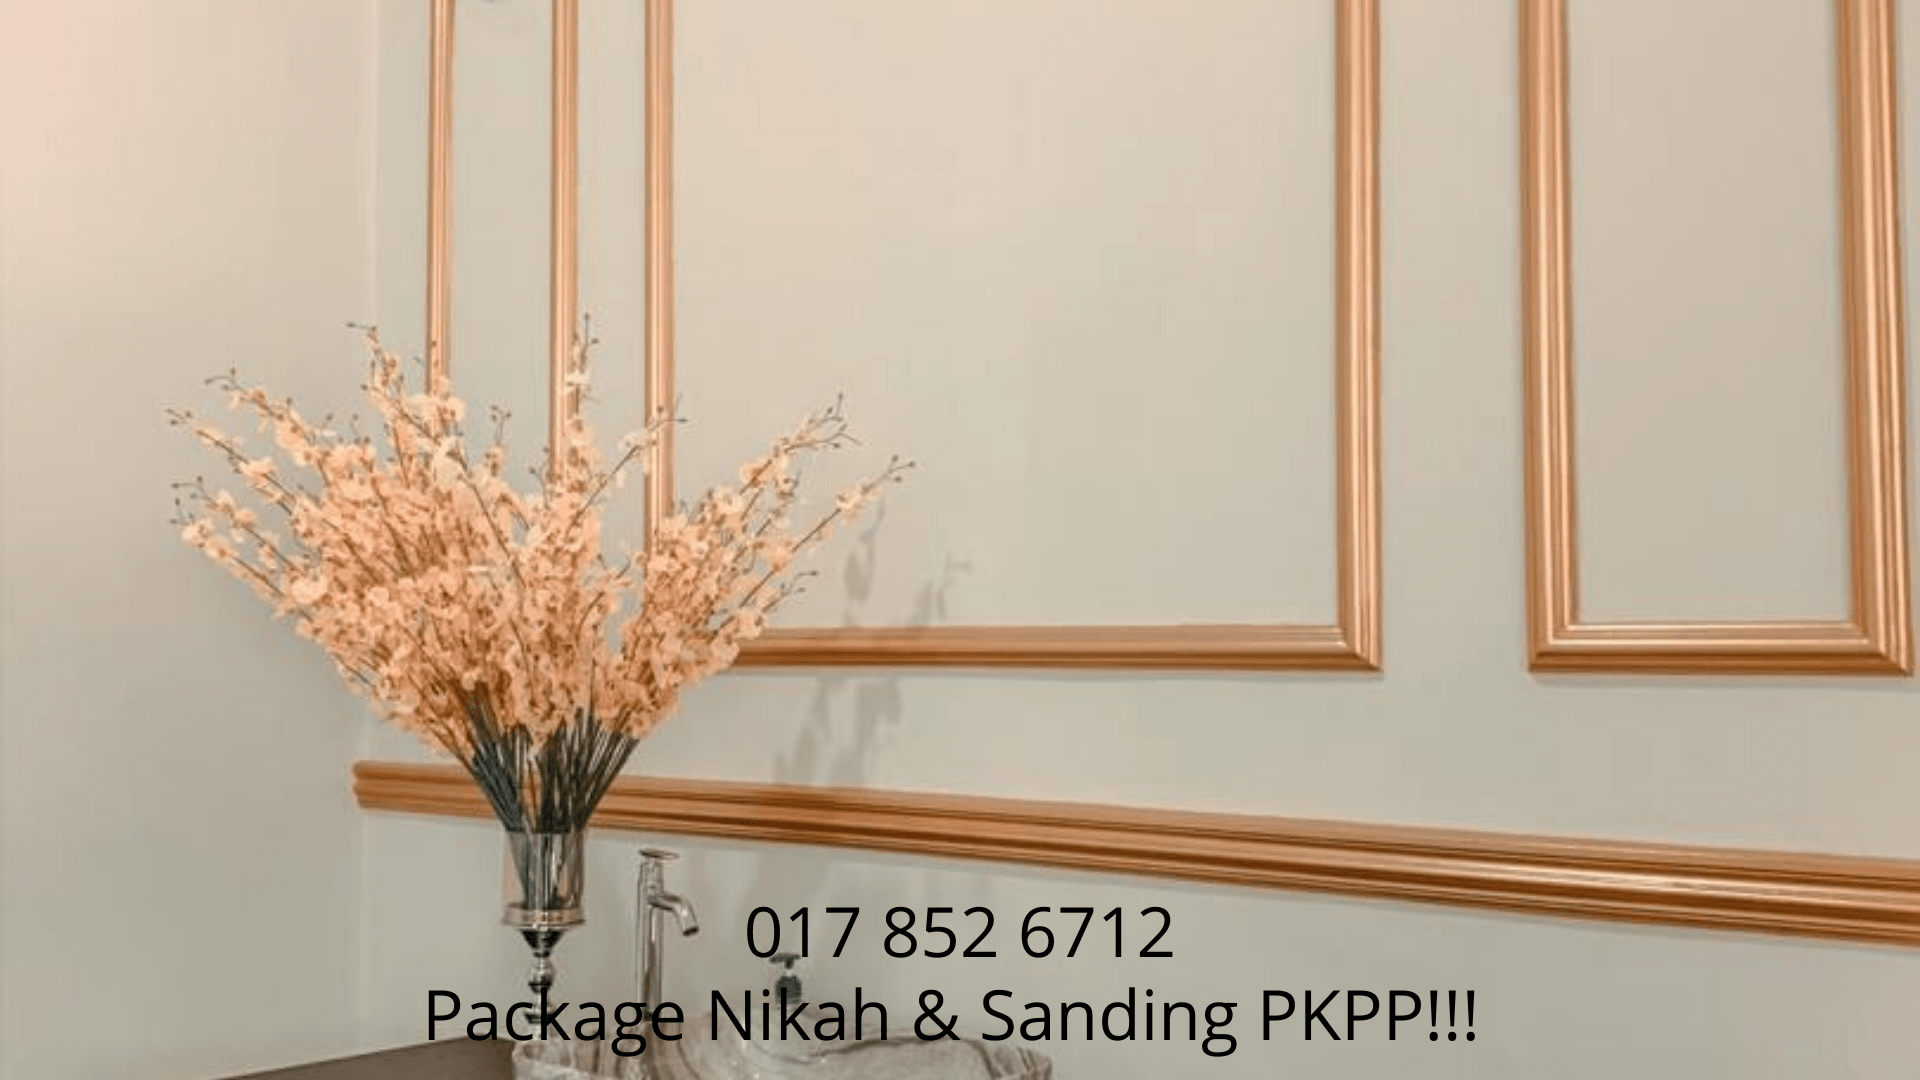 Package-Nikah-PKPP!!!-0178526712